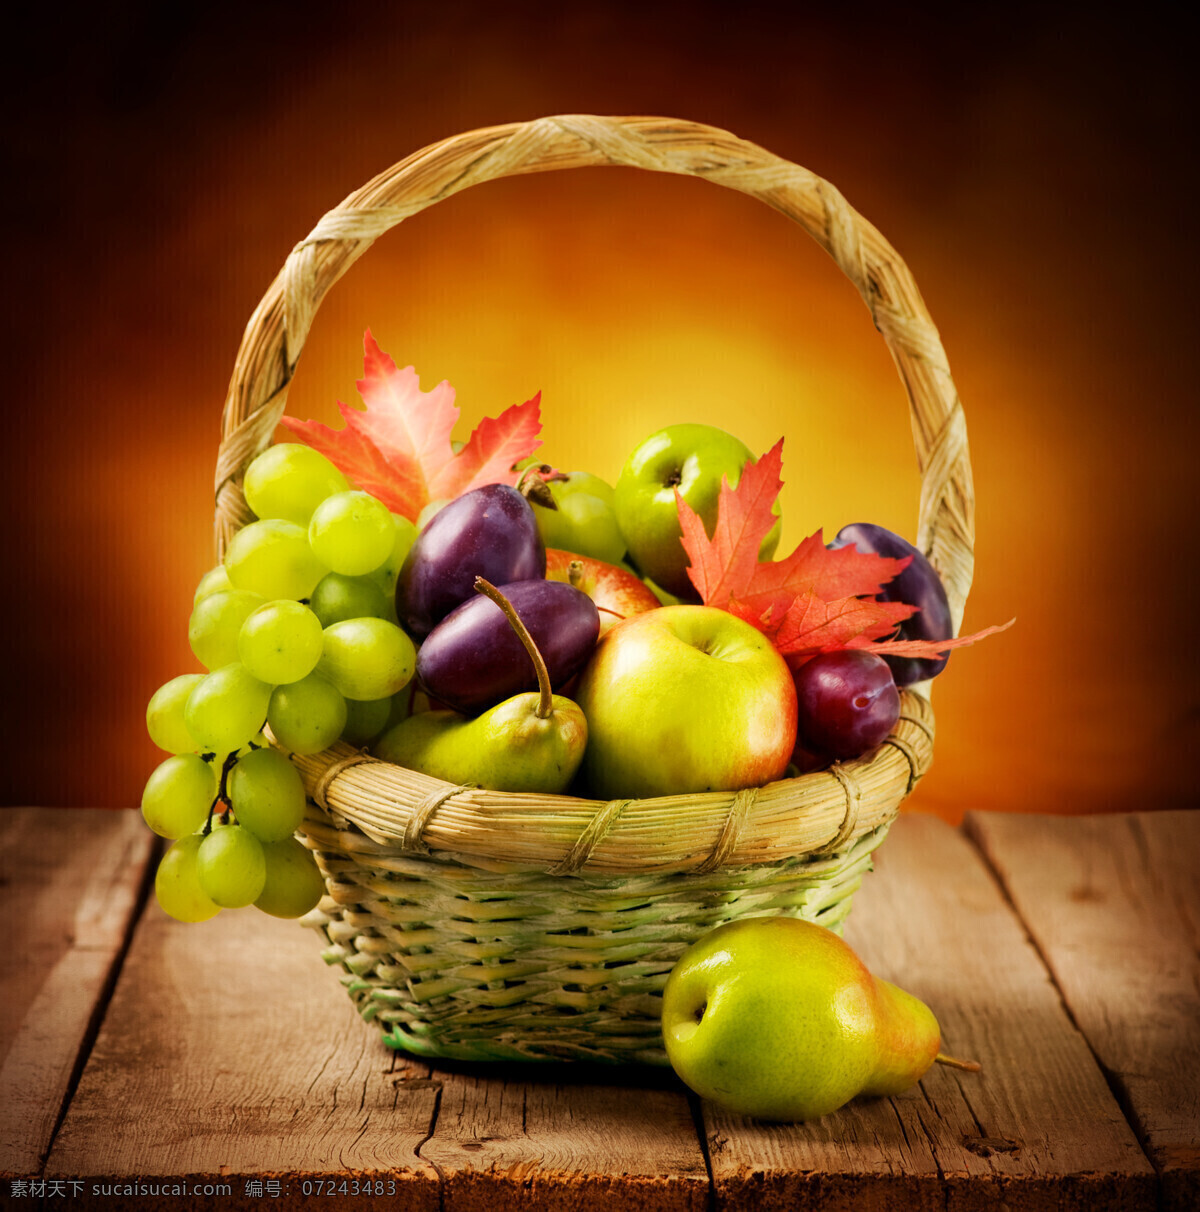 一篮水果 葡萄 梨子 苹果 芒果 枫叶 树叶 水果 新鲜水果 生物世界